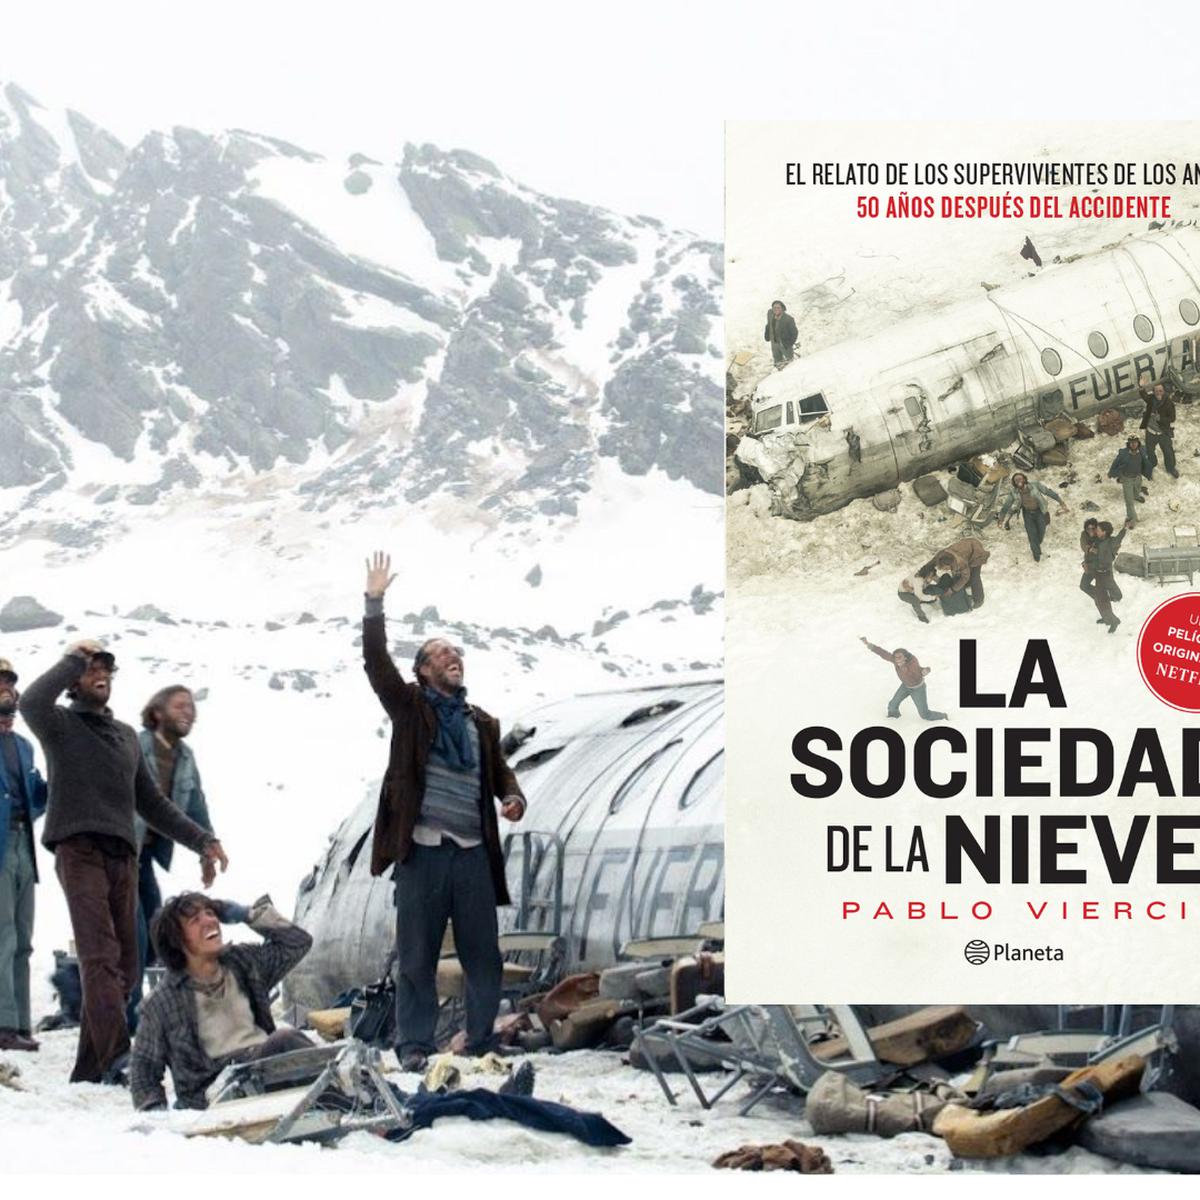 La Sociedad de la Nieve by Vierci, Pablo